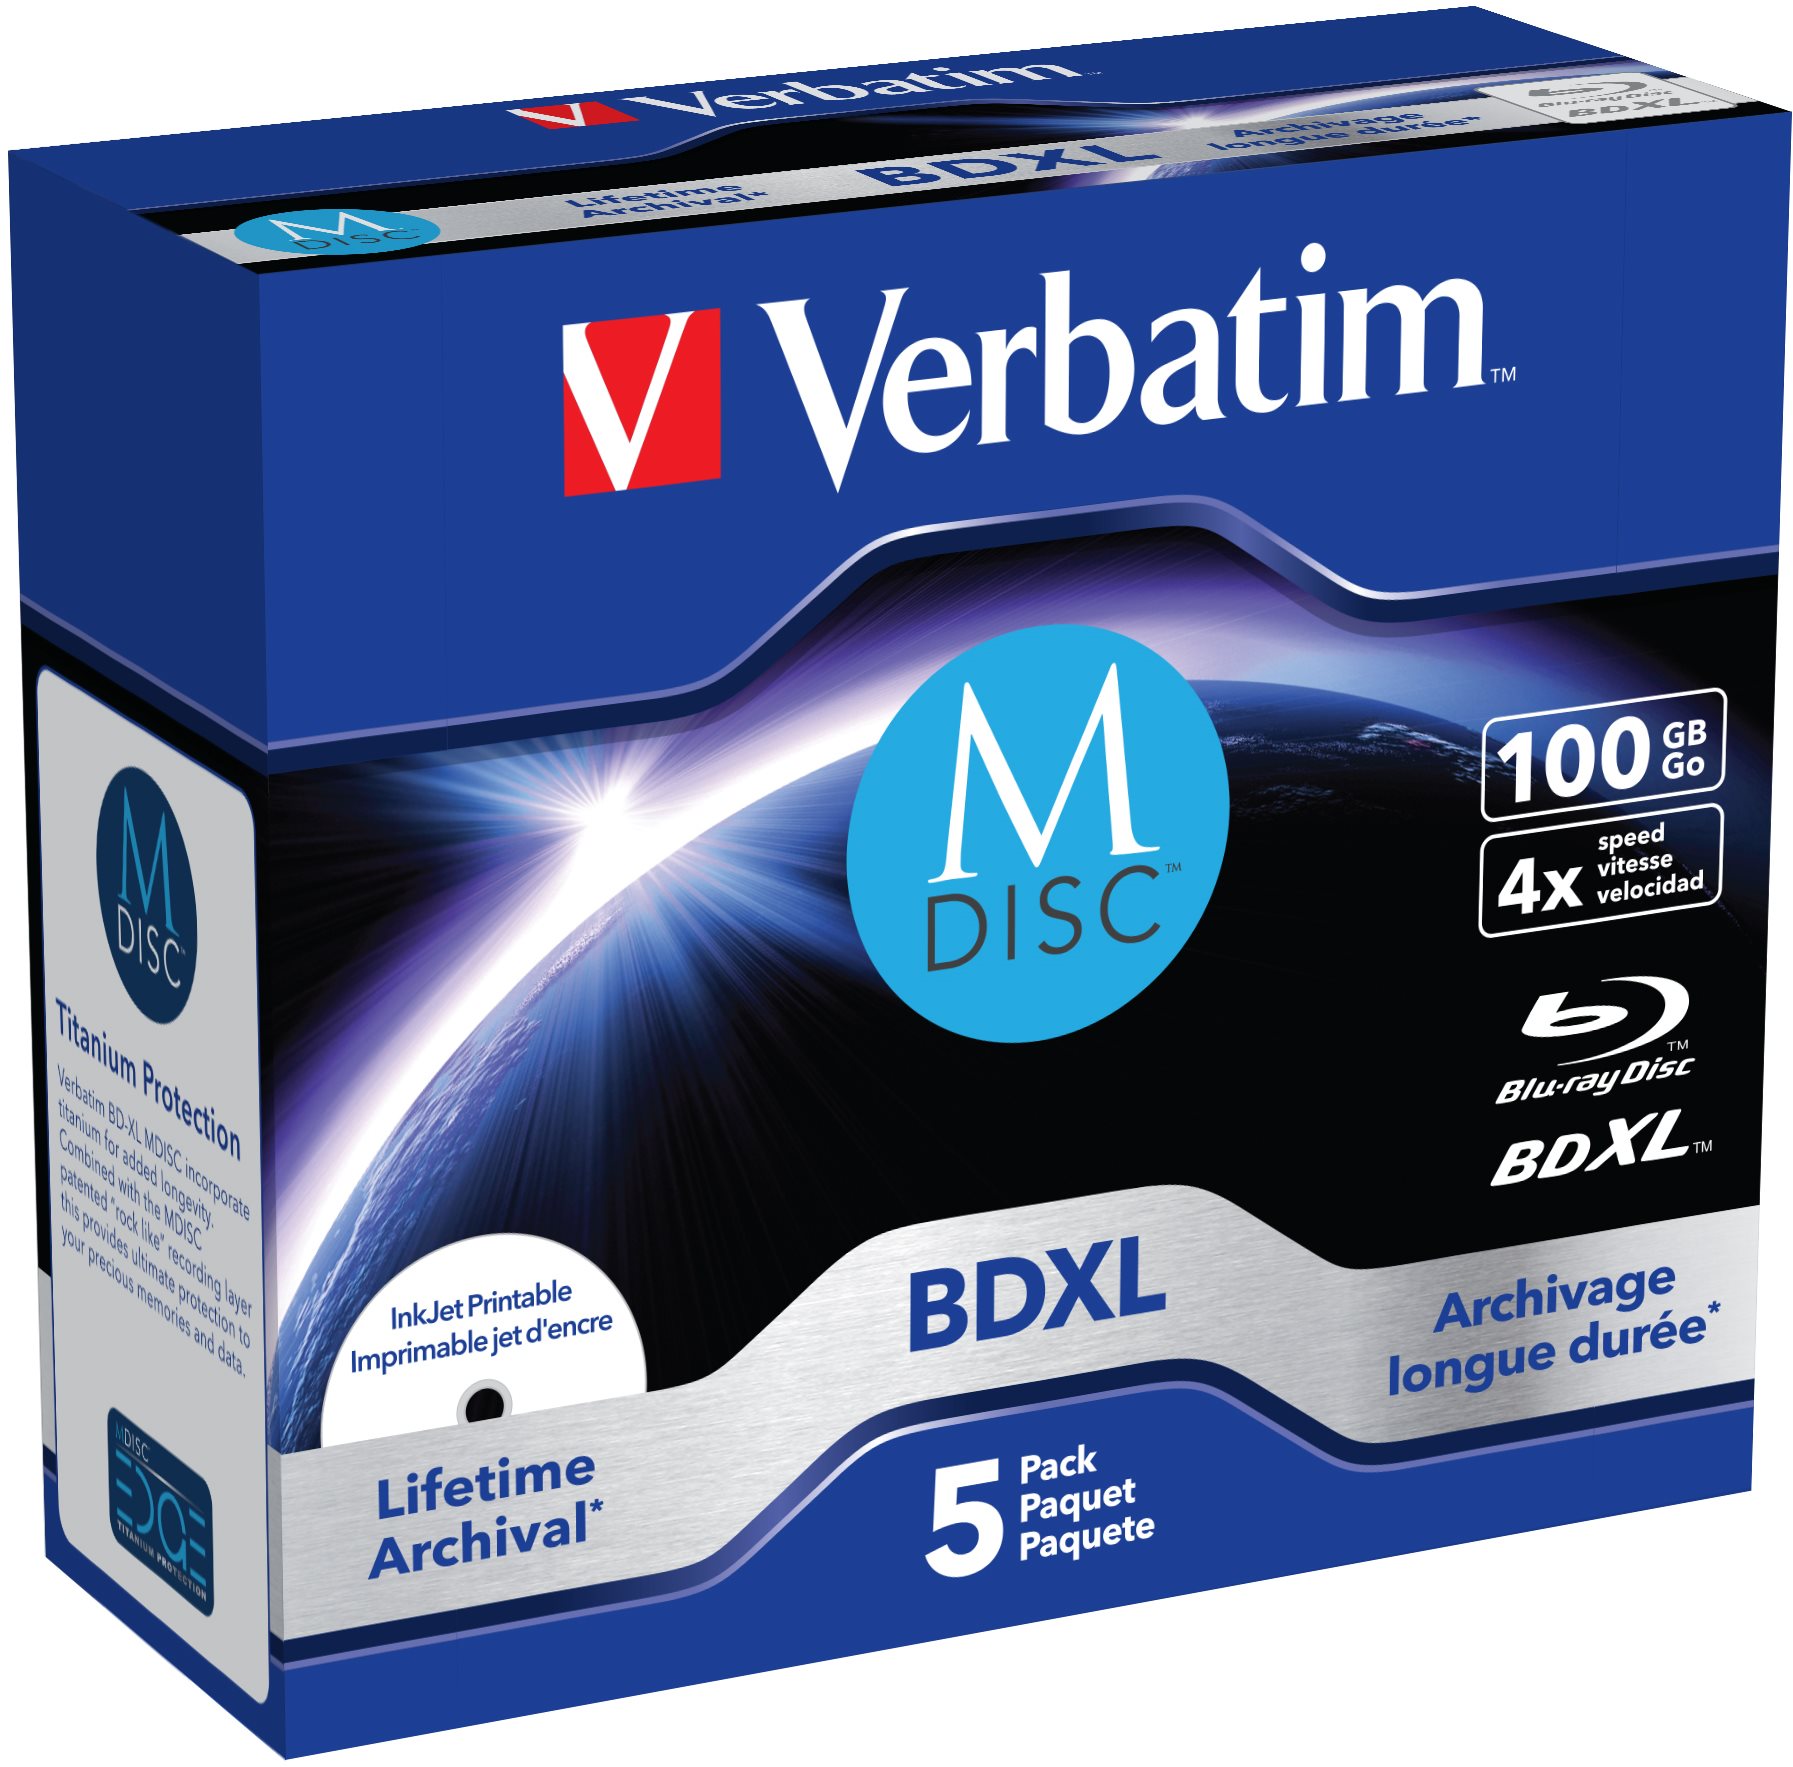 VERBATIM M-DISC BDXL 100GB PRINT. 5db/cs Jewel Case